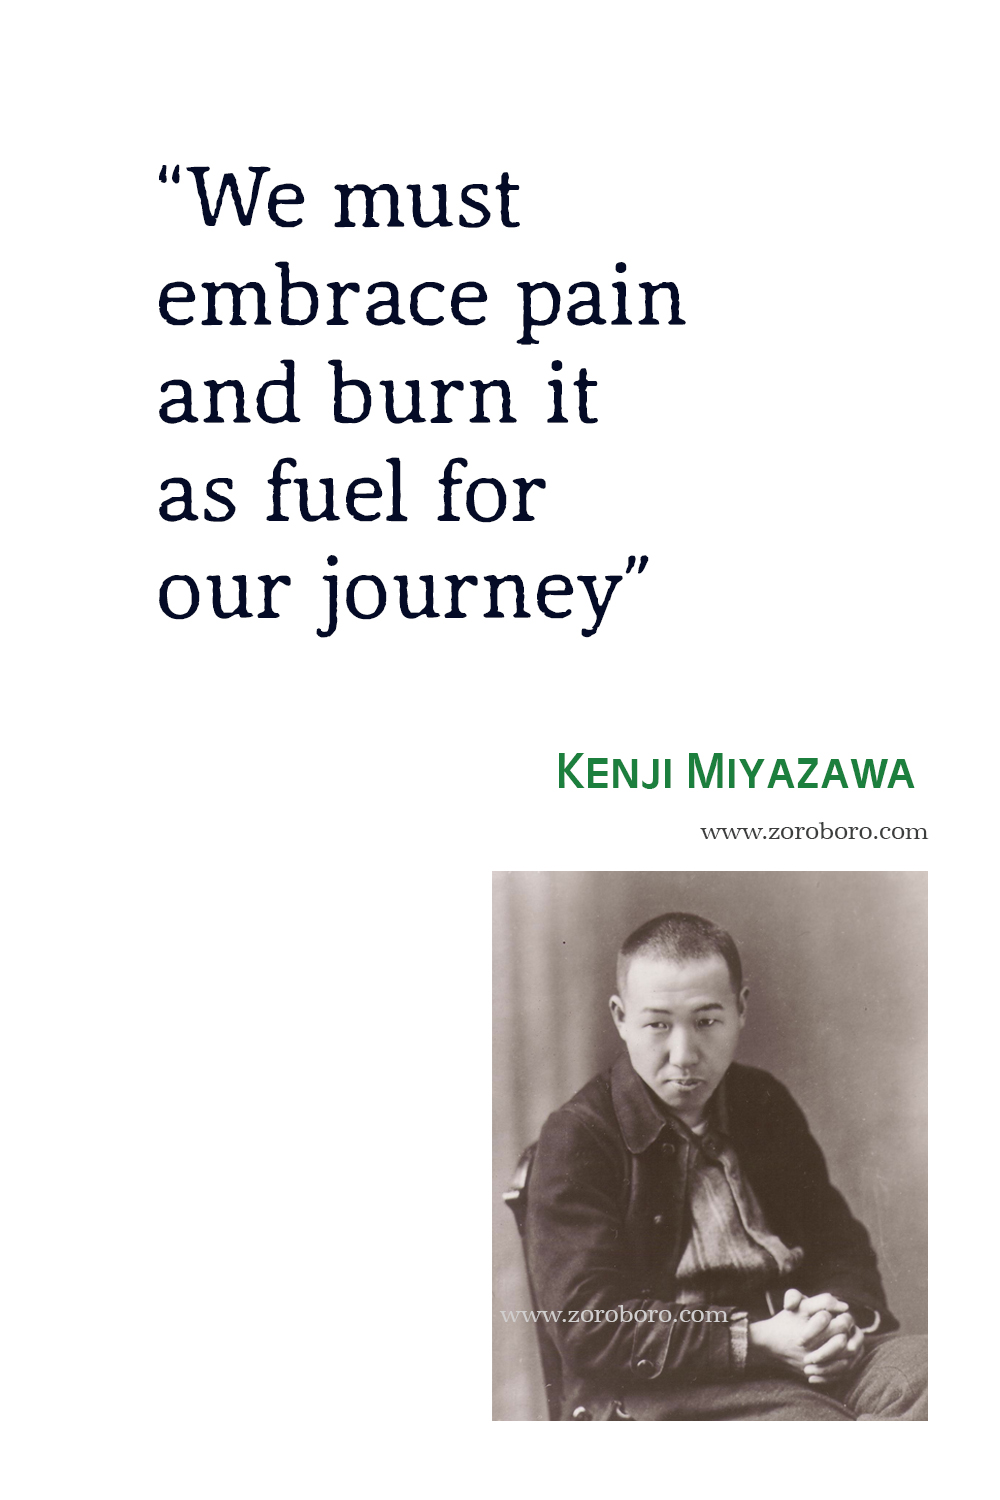 Kenji Miyazawa Quotes, Kenji Miyazawa Poems, Kenji Miyazawa Poet, Kenji Miyazawa Books Quotes, Kenji Miyazawa